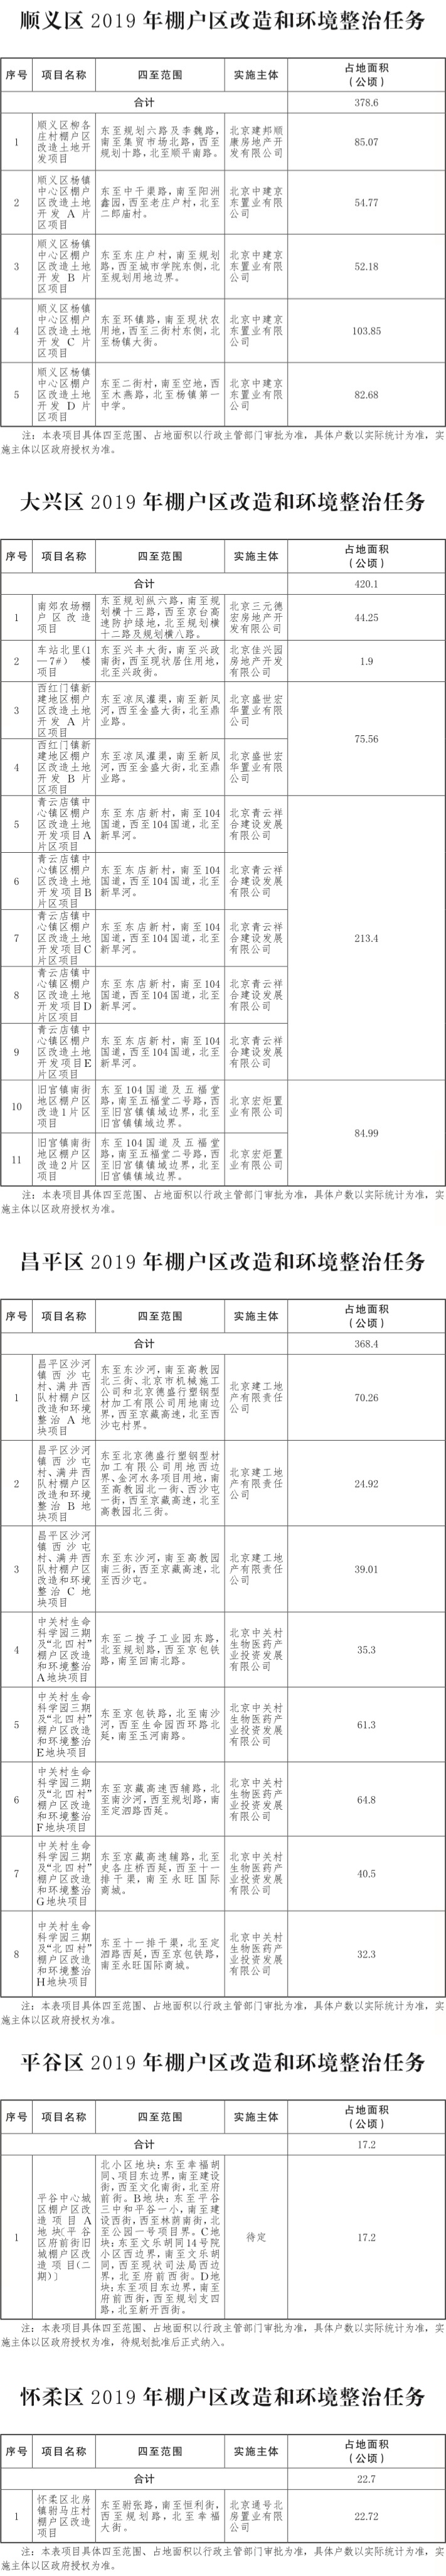 17-北京市2019年棚户区改造和环境整治任务-004.jpg